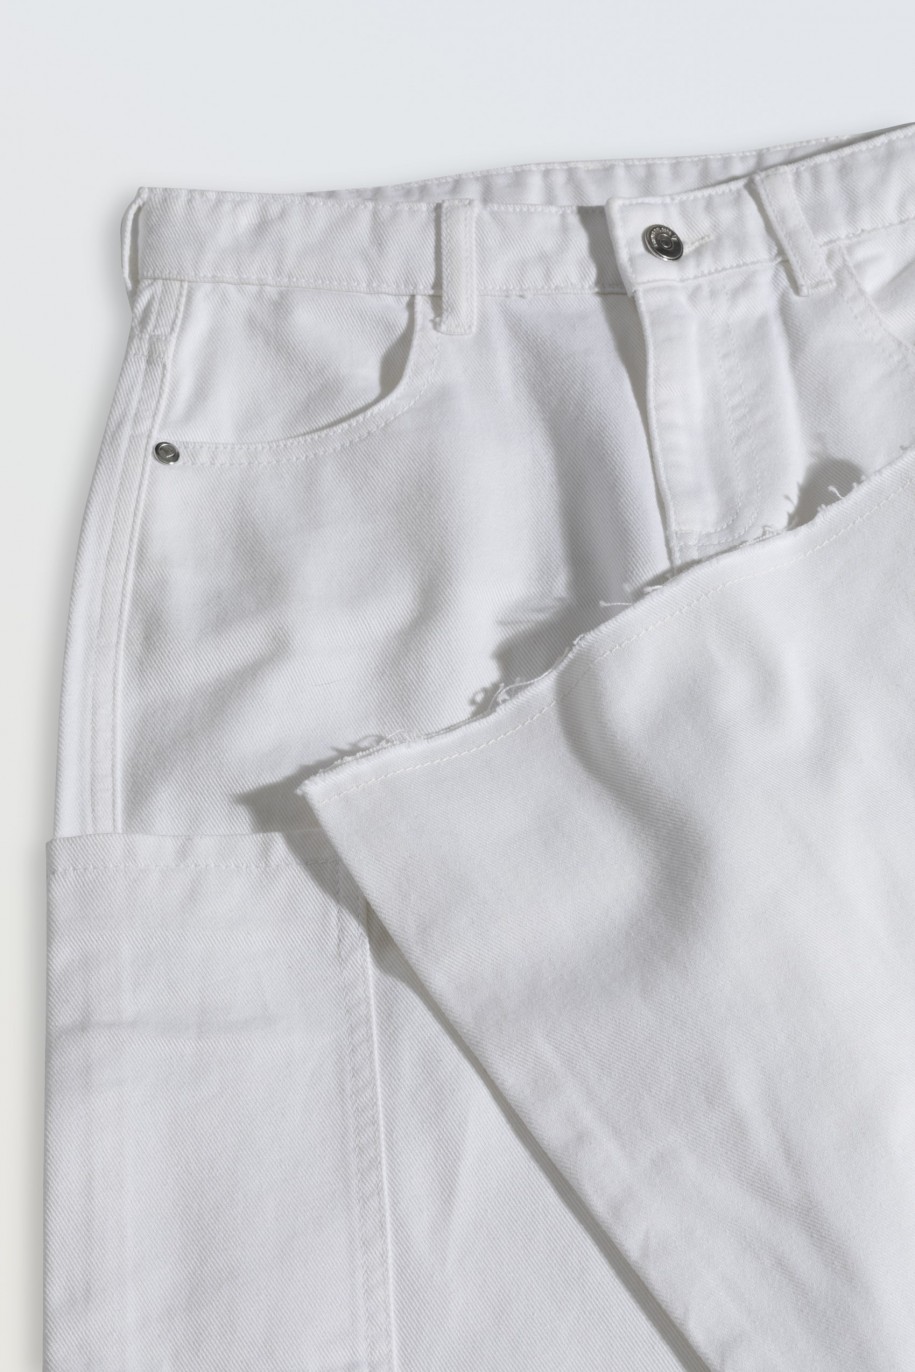 Białe jeansy typu WIDE LEG z asymetrycznymi kieszeniami na nogawkach - 46558